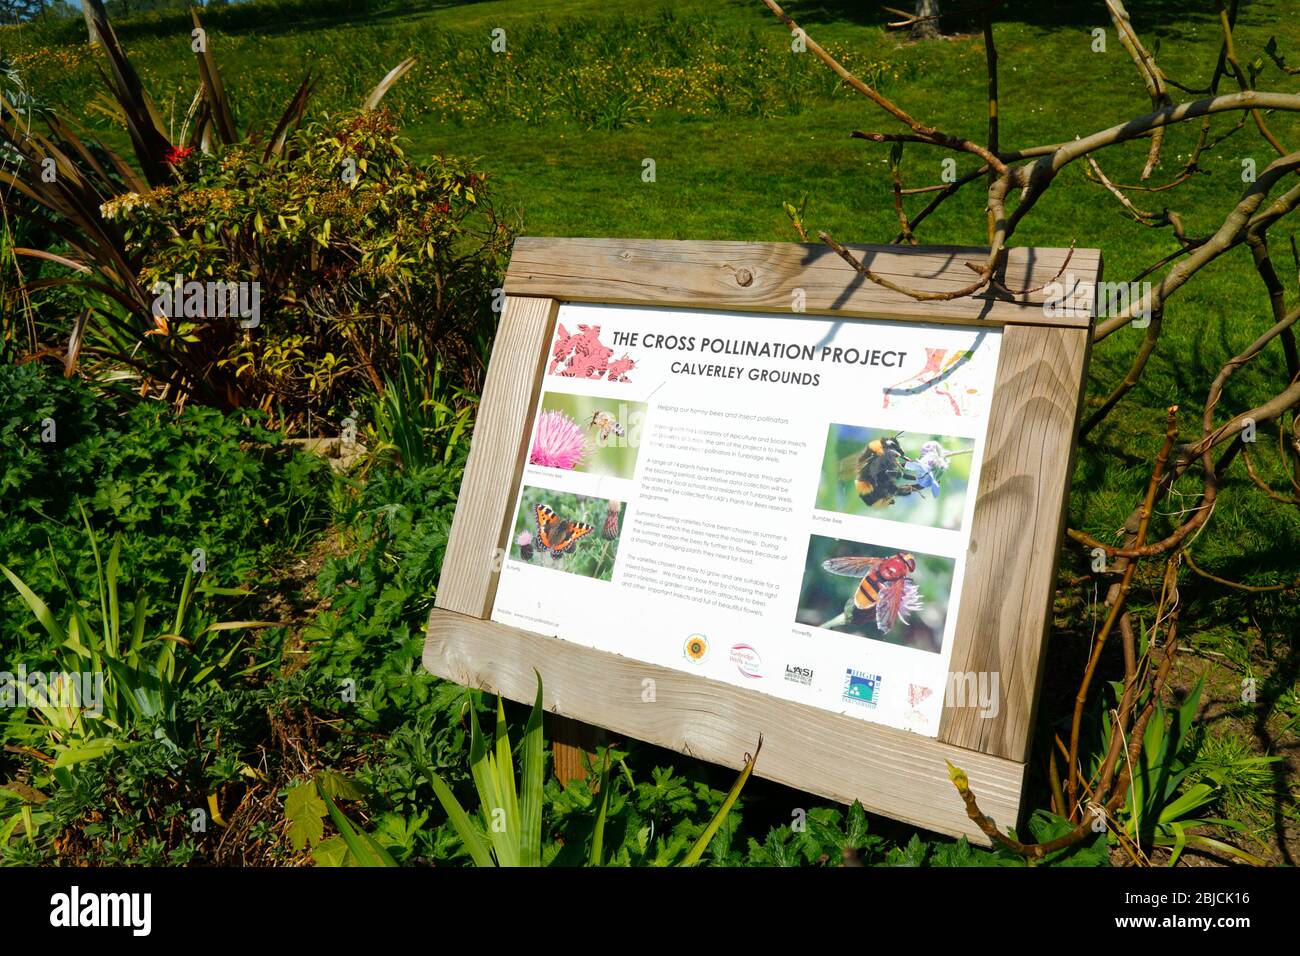 Signe expliquant le projet de pollinisation croisée aux variétés végétales de fleurs pour aider les abeilles et autres insectes, les terrains de Calverley, Royal Tunbridge Wells, Kent Banque D'Images